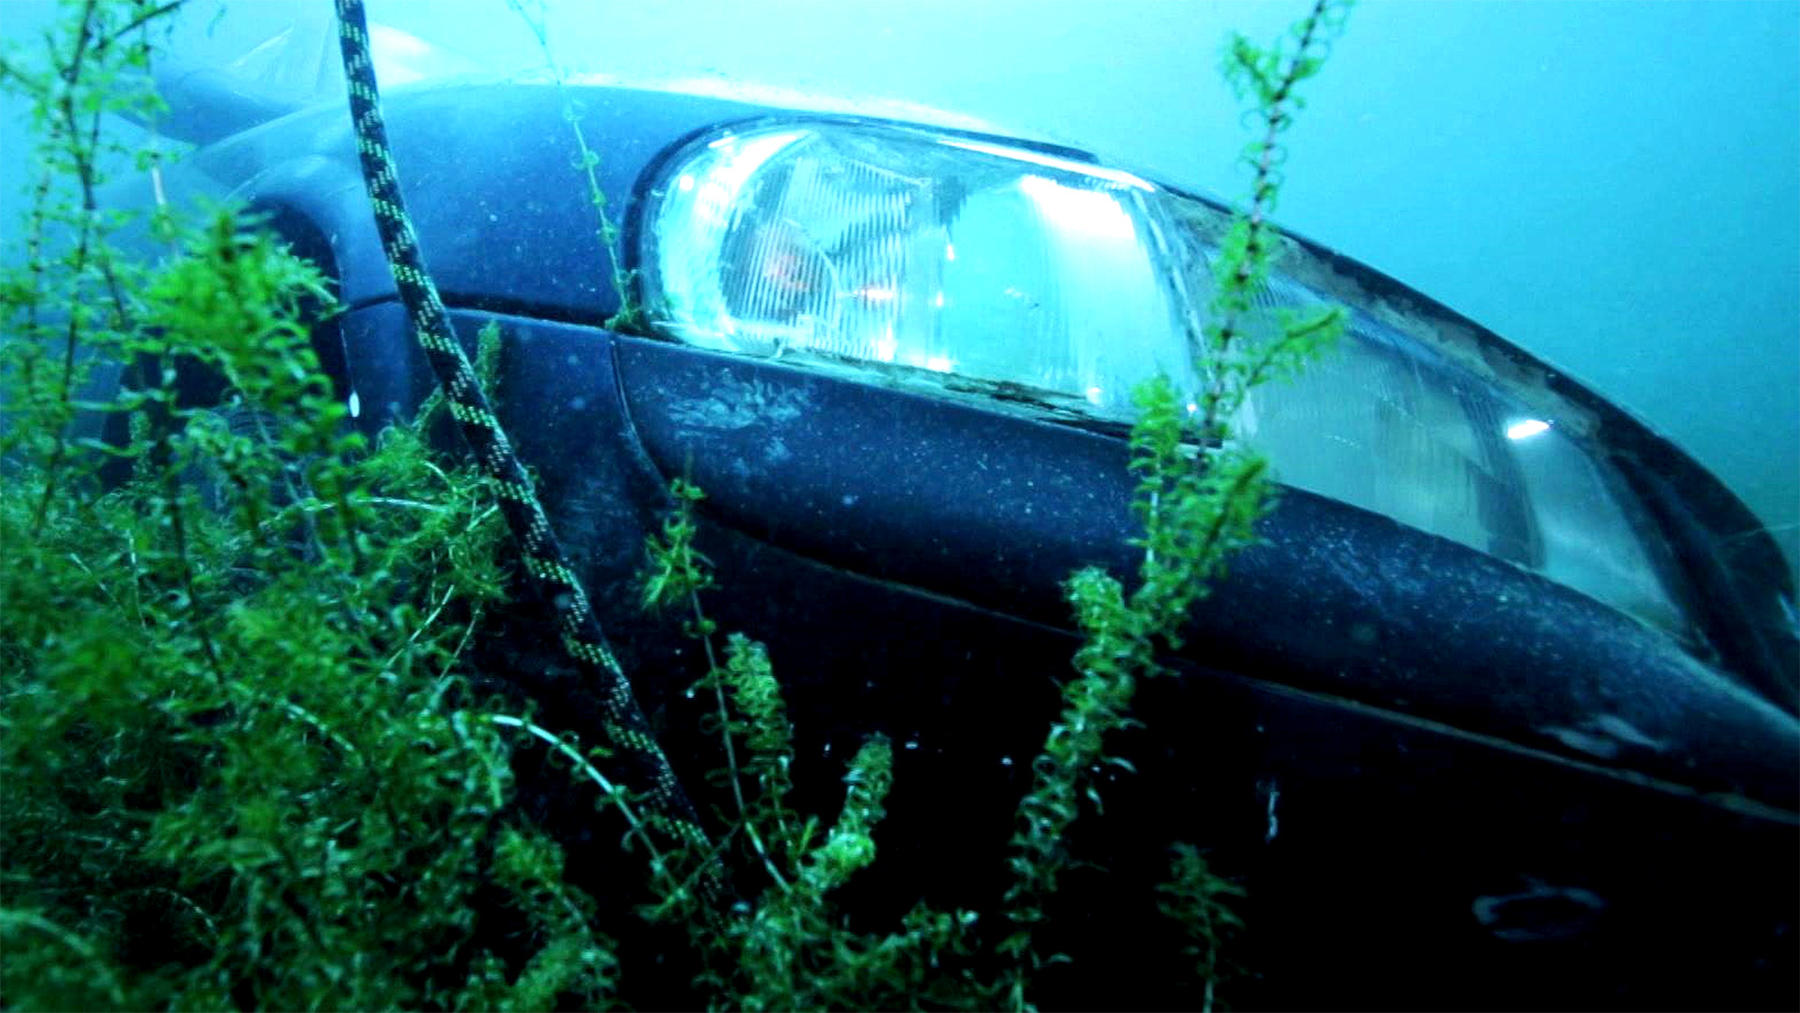 Thema u.a.: Auto unter Wasser